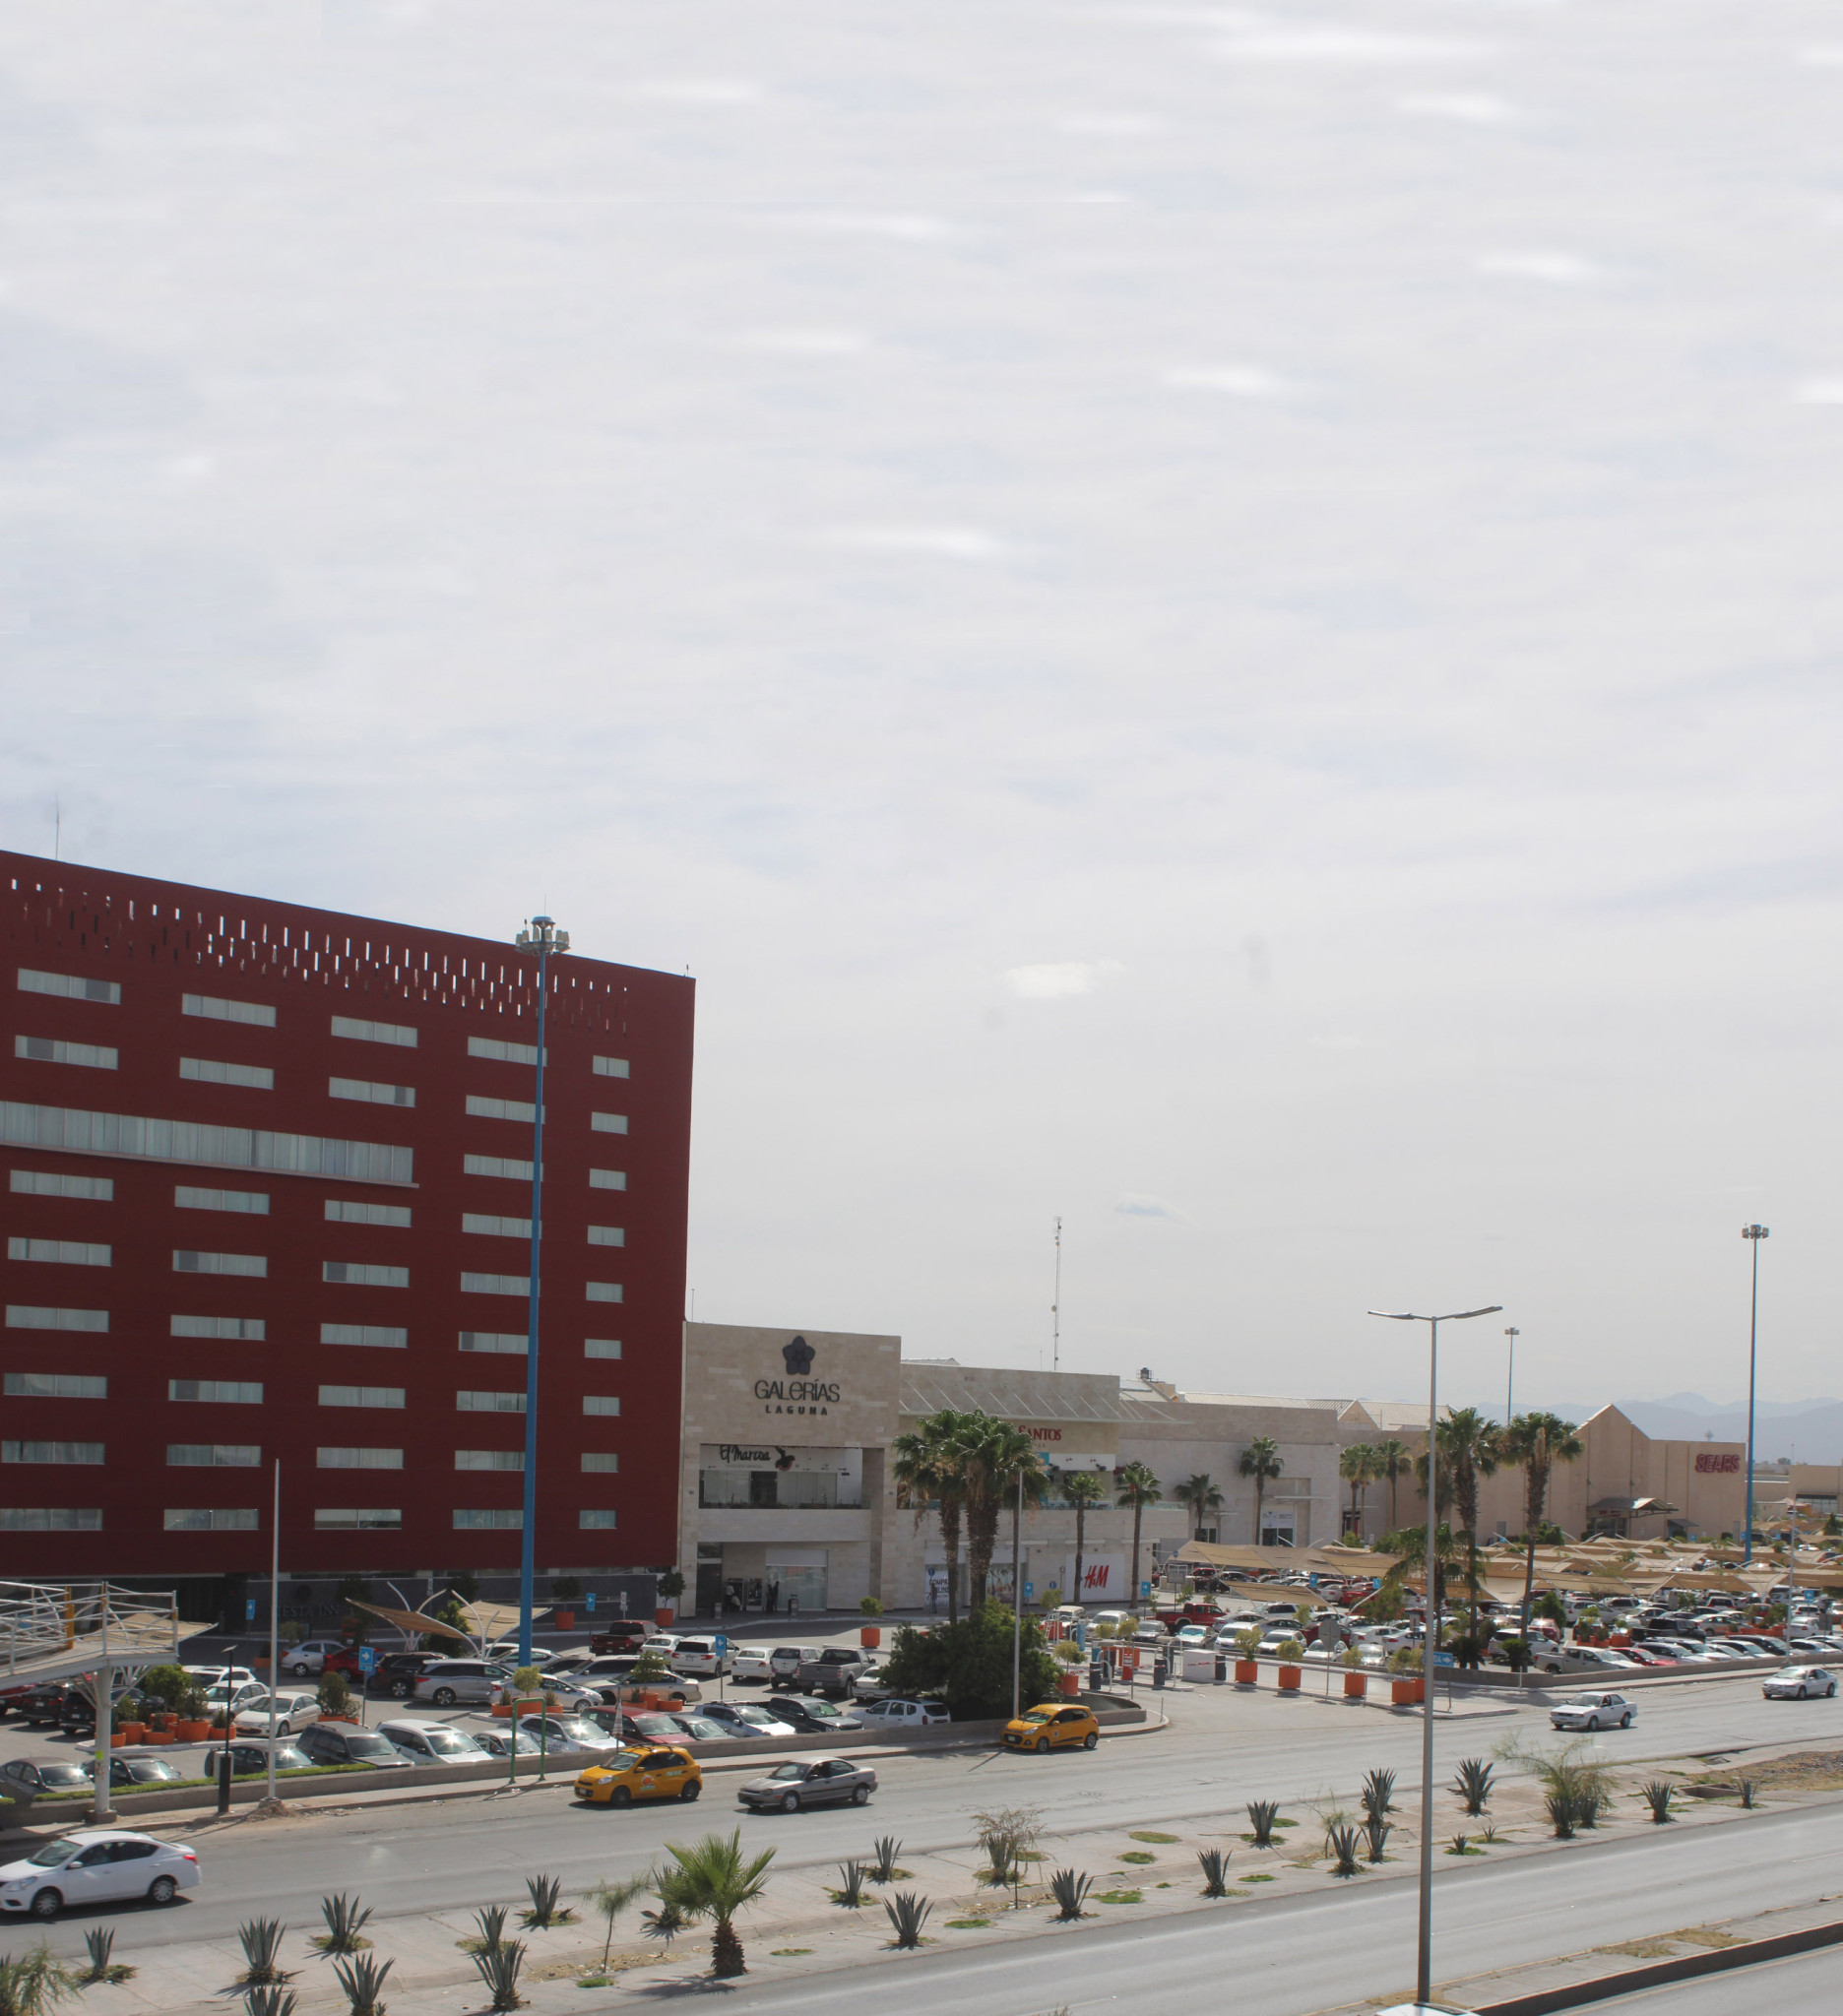 $!La nueva oleada de plazas comerciales en Torreón: ¿qué reflejan?